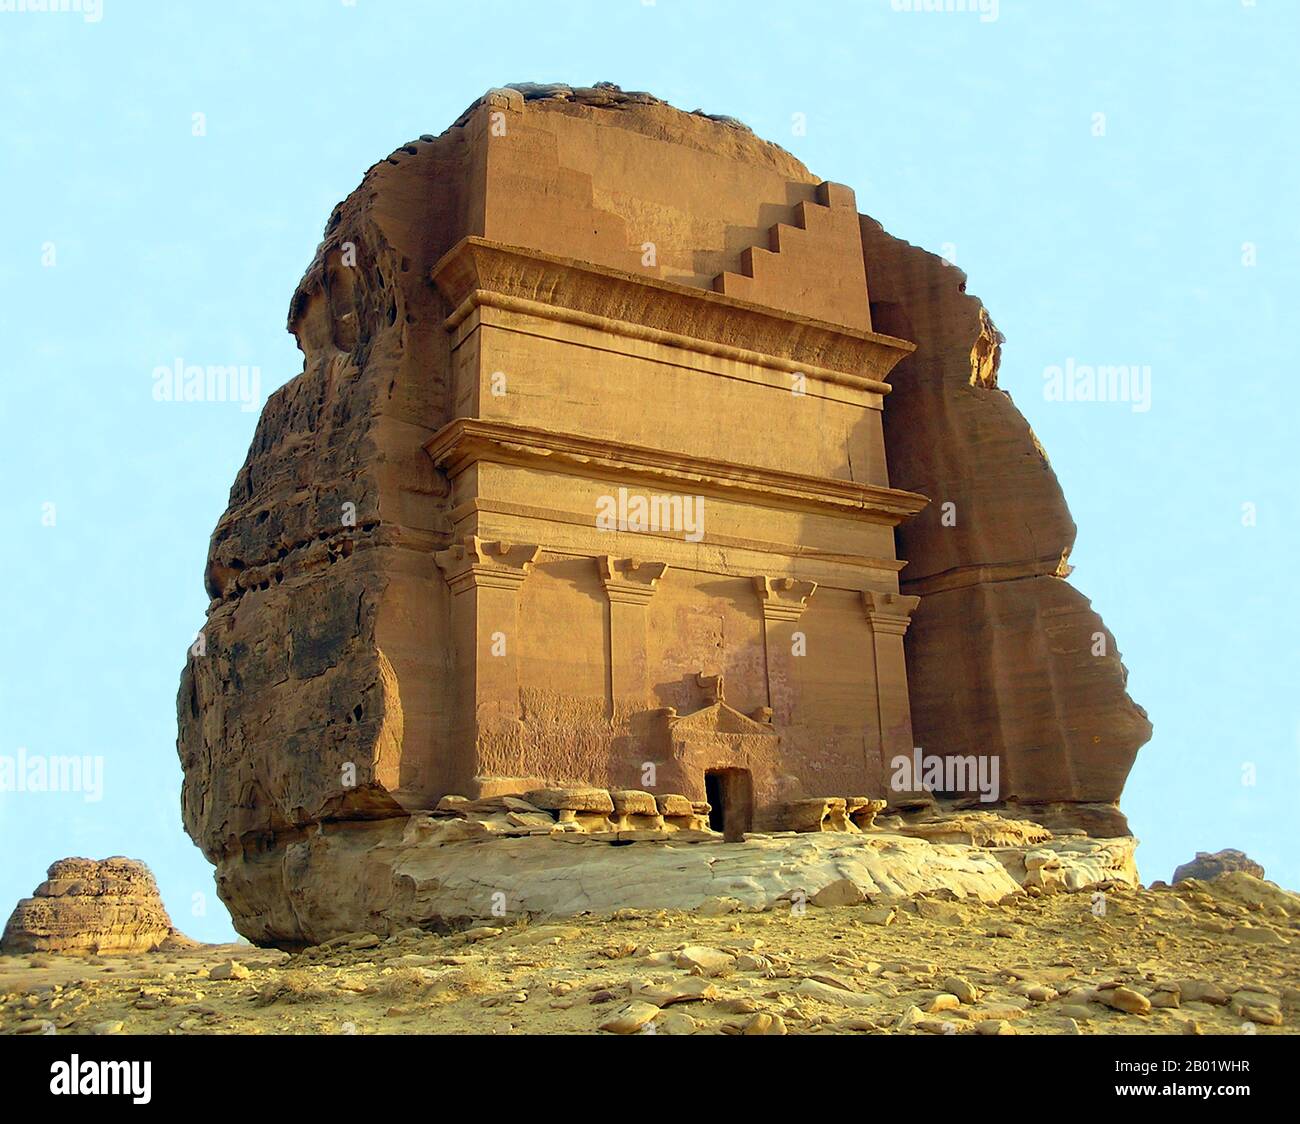 Arabia Saudita: Rovine nabatee scavate nella roccia di Mada'in Saleh, Arabia Saudita, proclamate patrimonio mondiale dell'UNESCO nel 2008. Ma'in Saleh, chiamato anche al-Hijr o Hegra, è un sito archeologico pre-islamico situato nel settore di al-Ula, all'interno della regione di al Madinah dell'Arabia Saudita. La maggior parte delle vestigia risalgono al regno nabateo (i secolo d.C.). Il sito costituisce l'insediamento più meridionale e più grande del regno dopo Petra, la sua capitale. Tracce dell'occupazione Lihyanita e romana rispettivamente prima e dopo il dominio nabateo, possono essere trovate in situ. Foto Stock